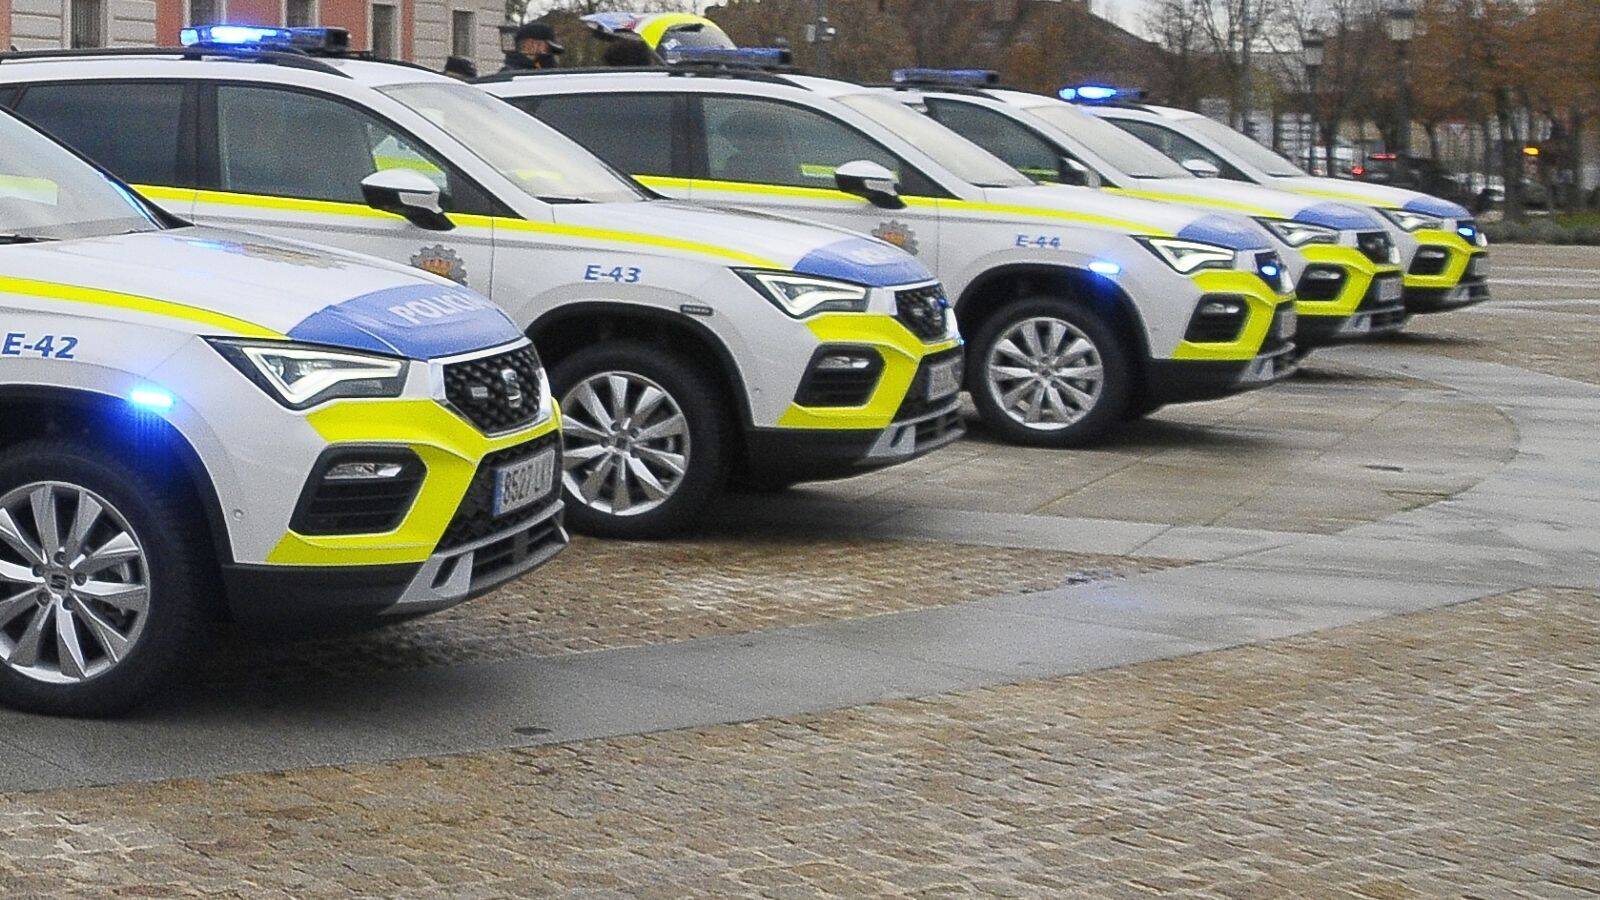 VOX Boadilla propone instalar desfibriladores en todos los coches de la policía local